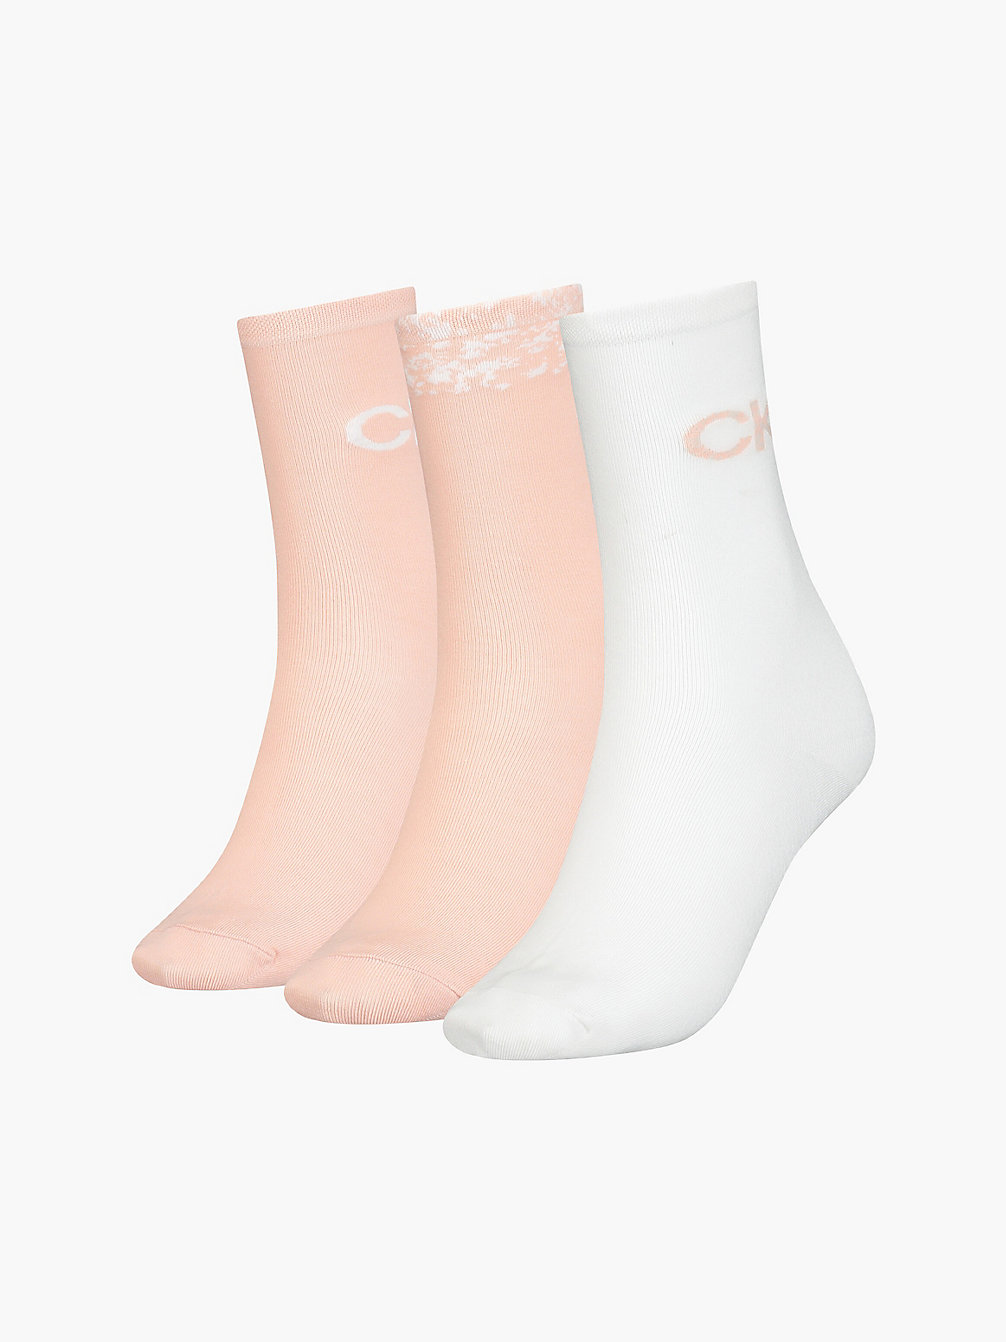 WHITE 3 Pack Crew Socks Gift Set undefined women Calvin Klein